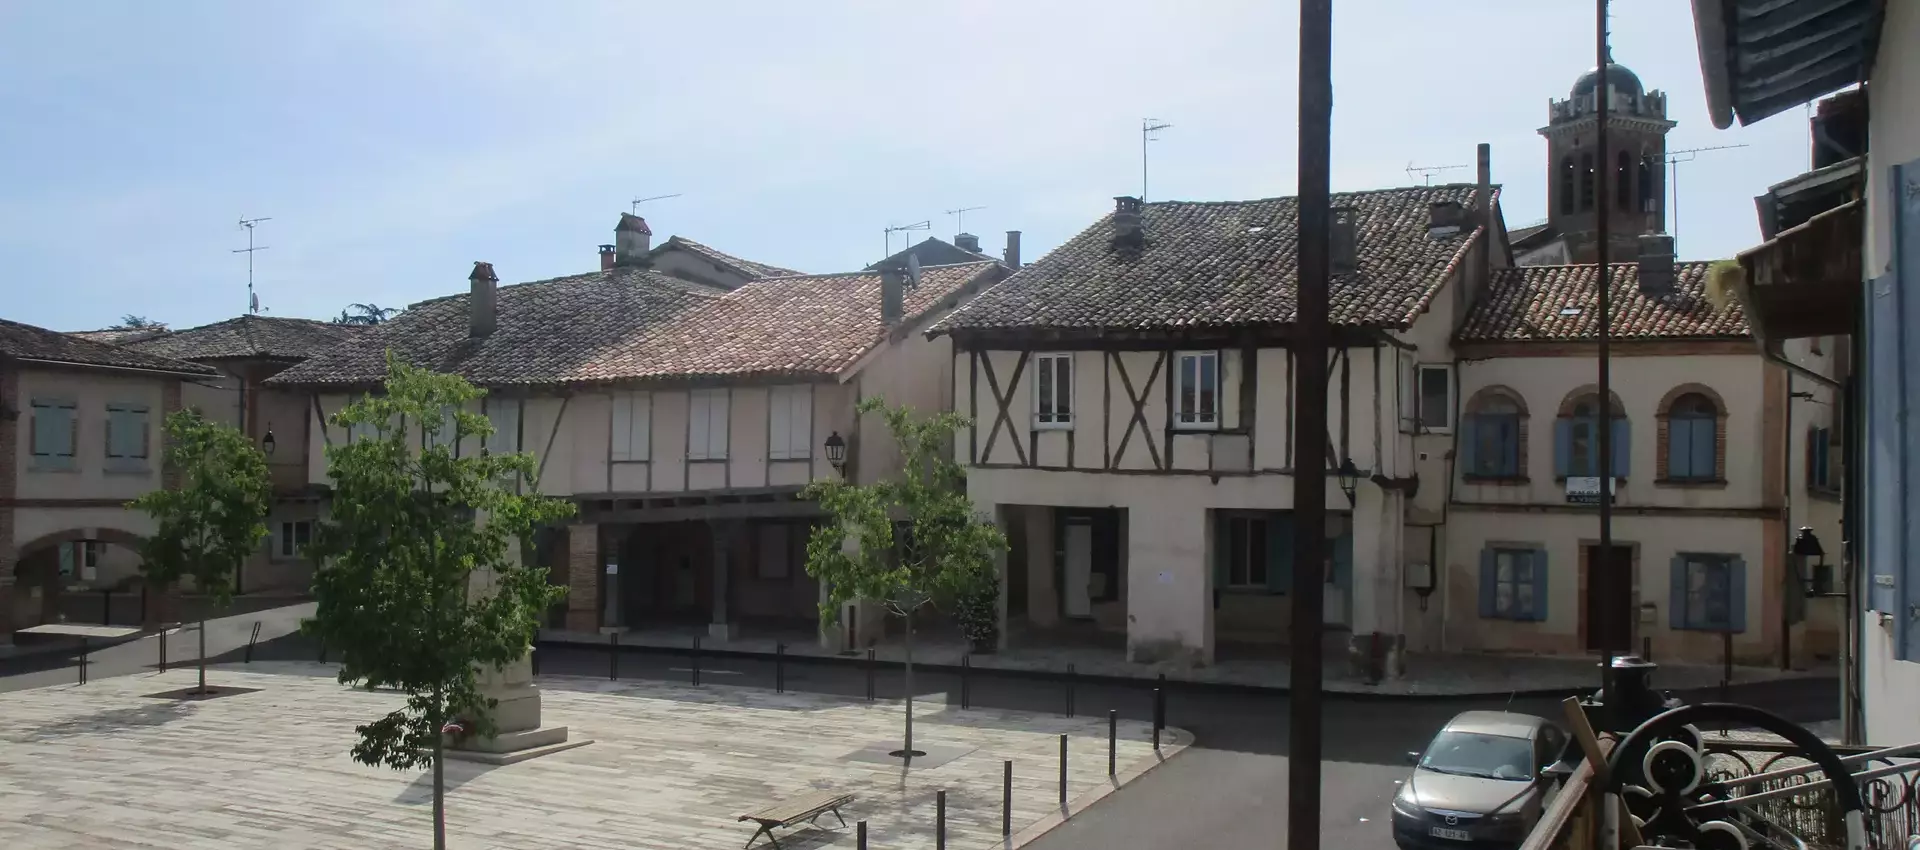 Bienvenue sur le site officiel de la commune de Réalville (82) Tarn et Garonne